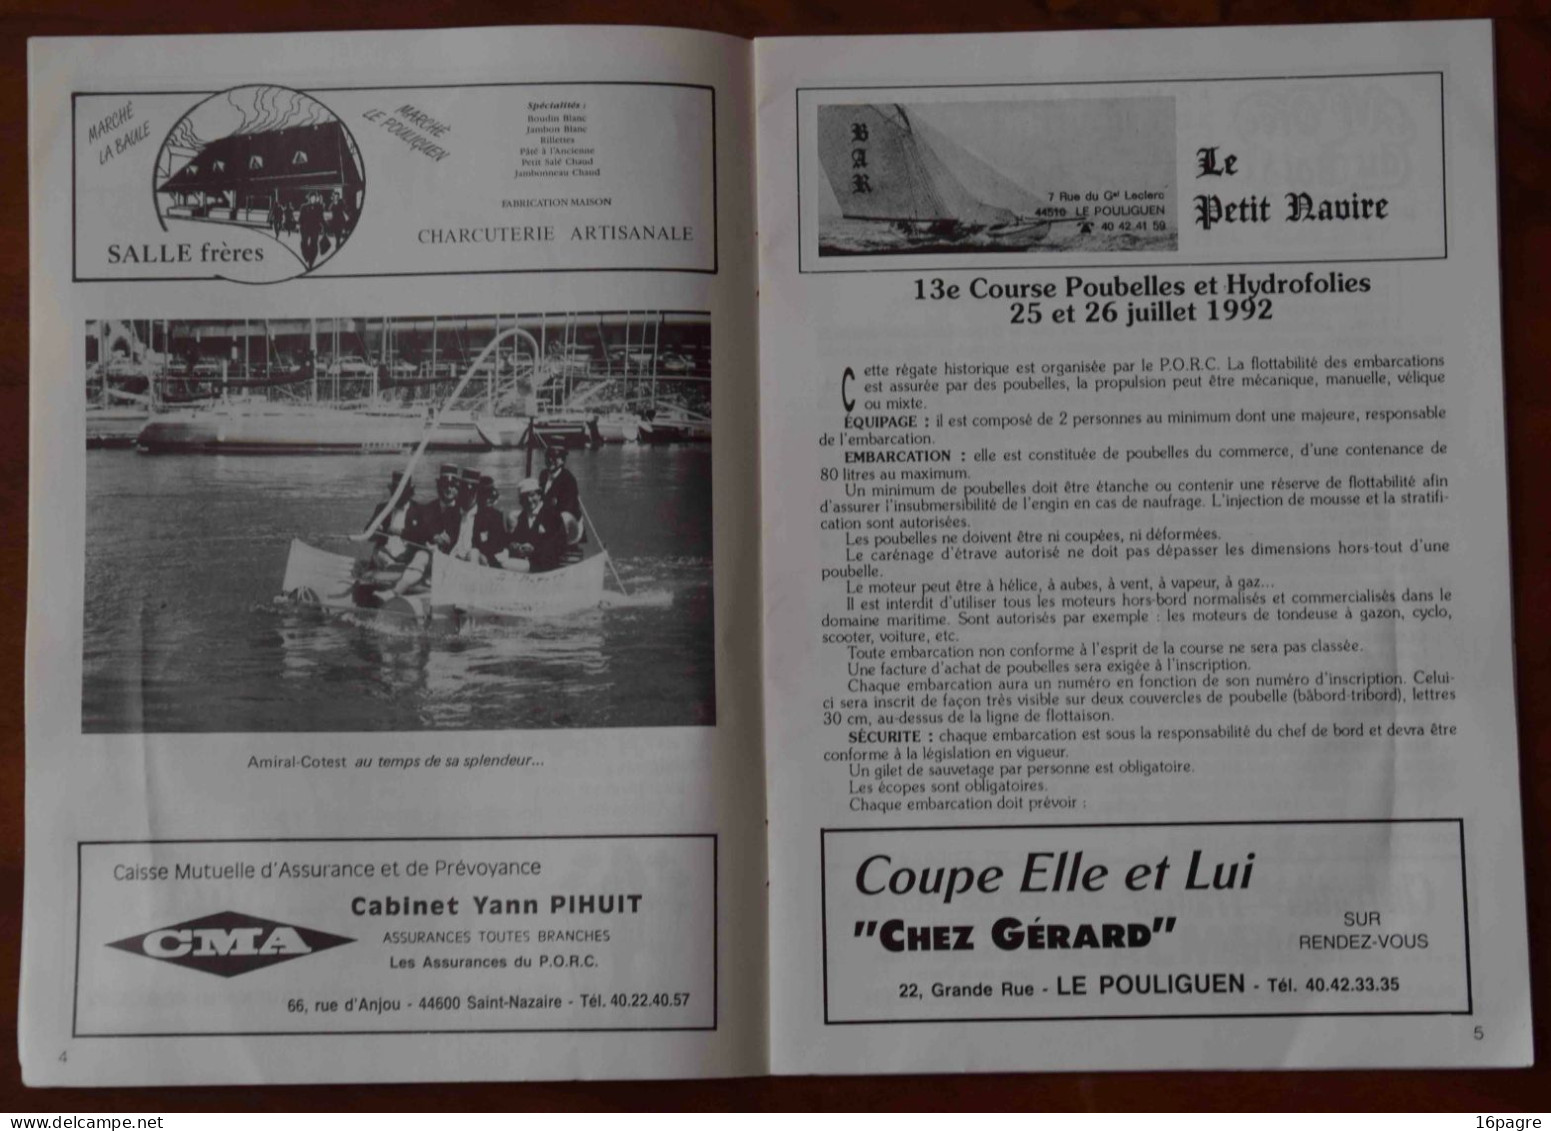 PROGRAMME DU CARNAVAL DE LA MER, LE POULIGUEN-LA BAULE, COURSE POUBELLE, JUILLET 1992. LOIRE-ATLANTIQUE. - Programs